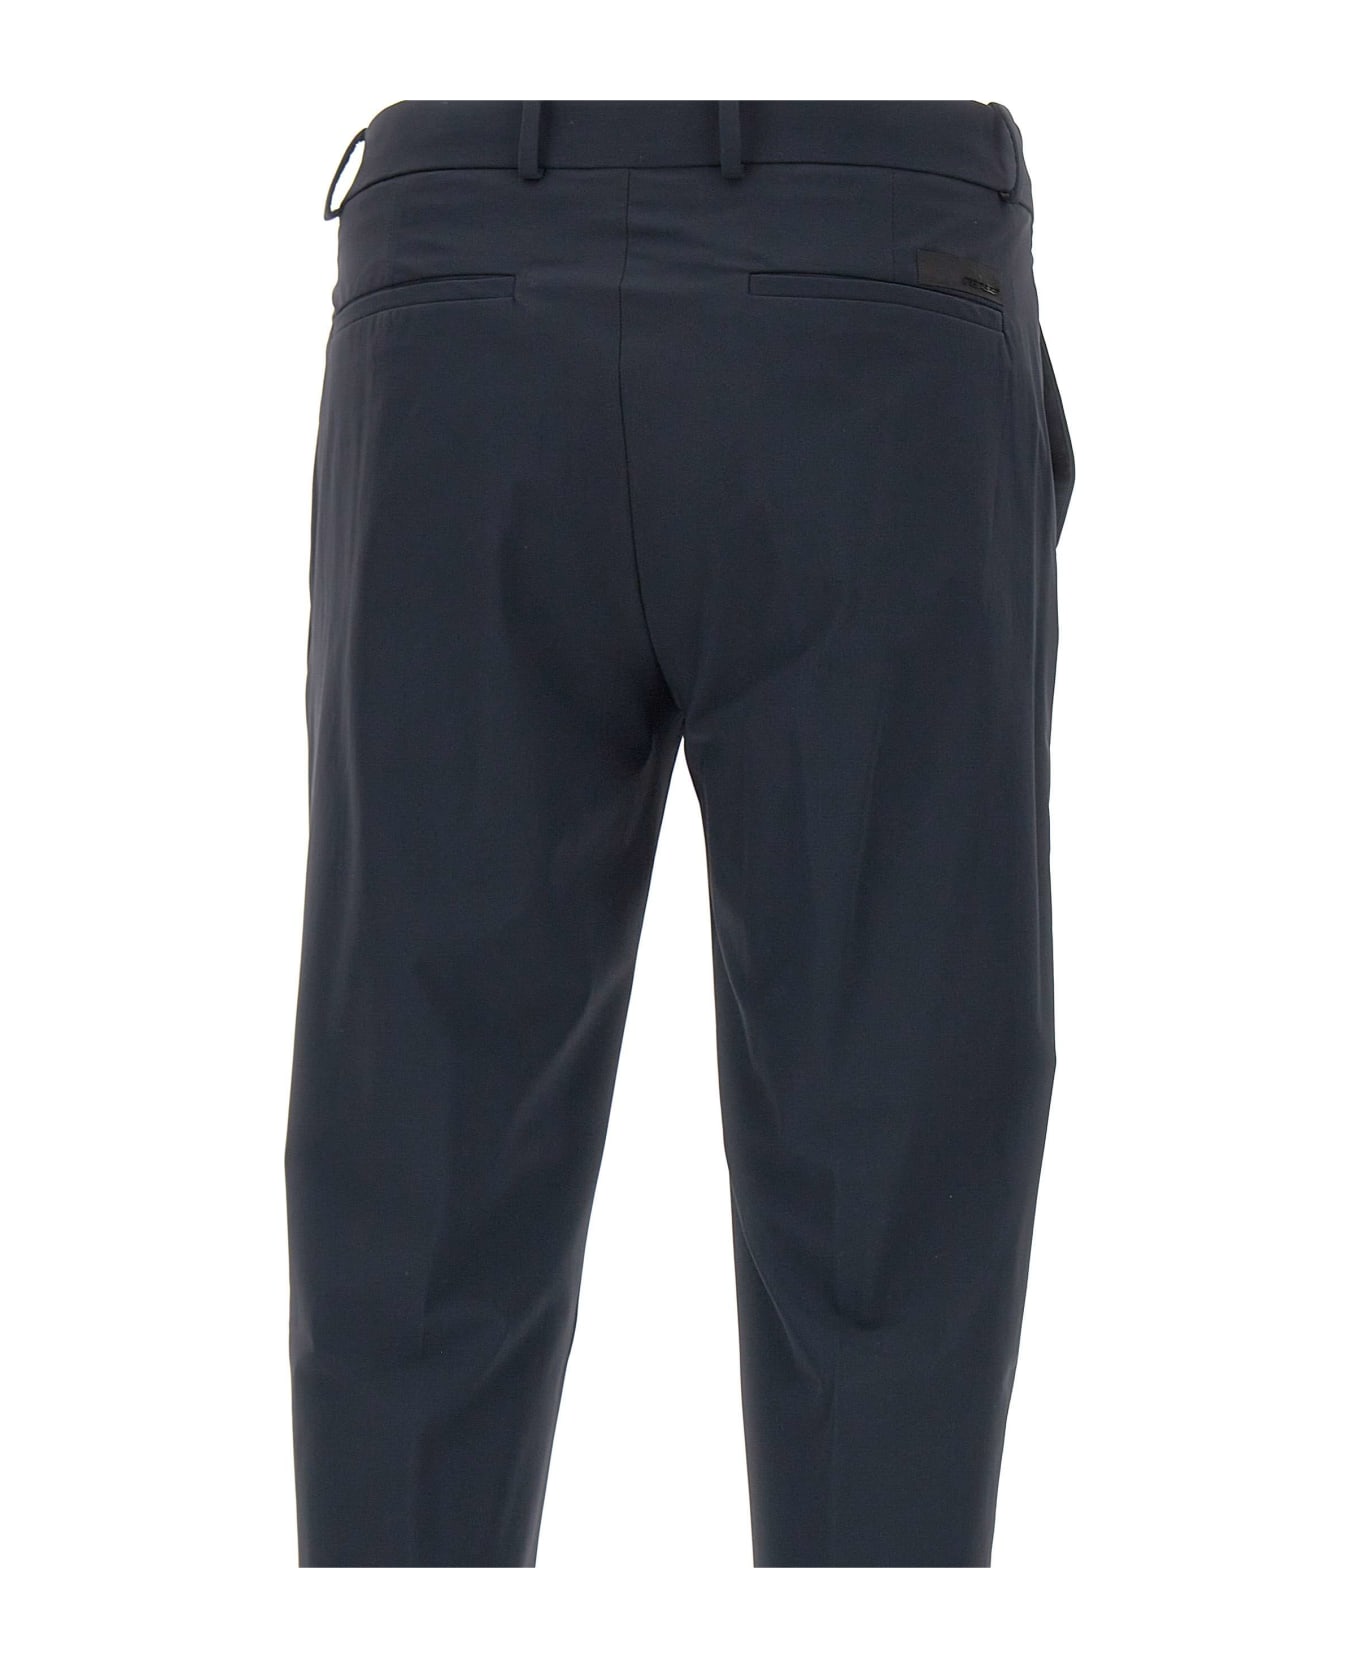 RRD - Roberto Ricci Design Men's Trousers 'revo Chino' ボトムス